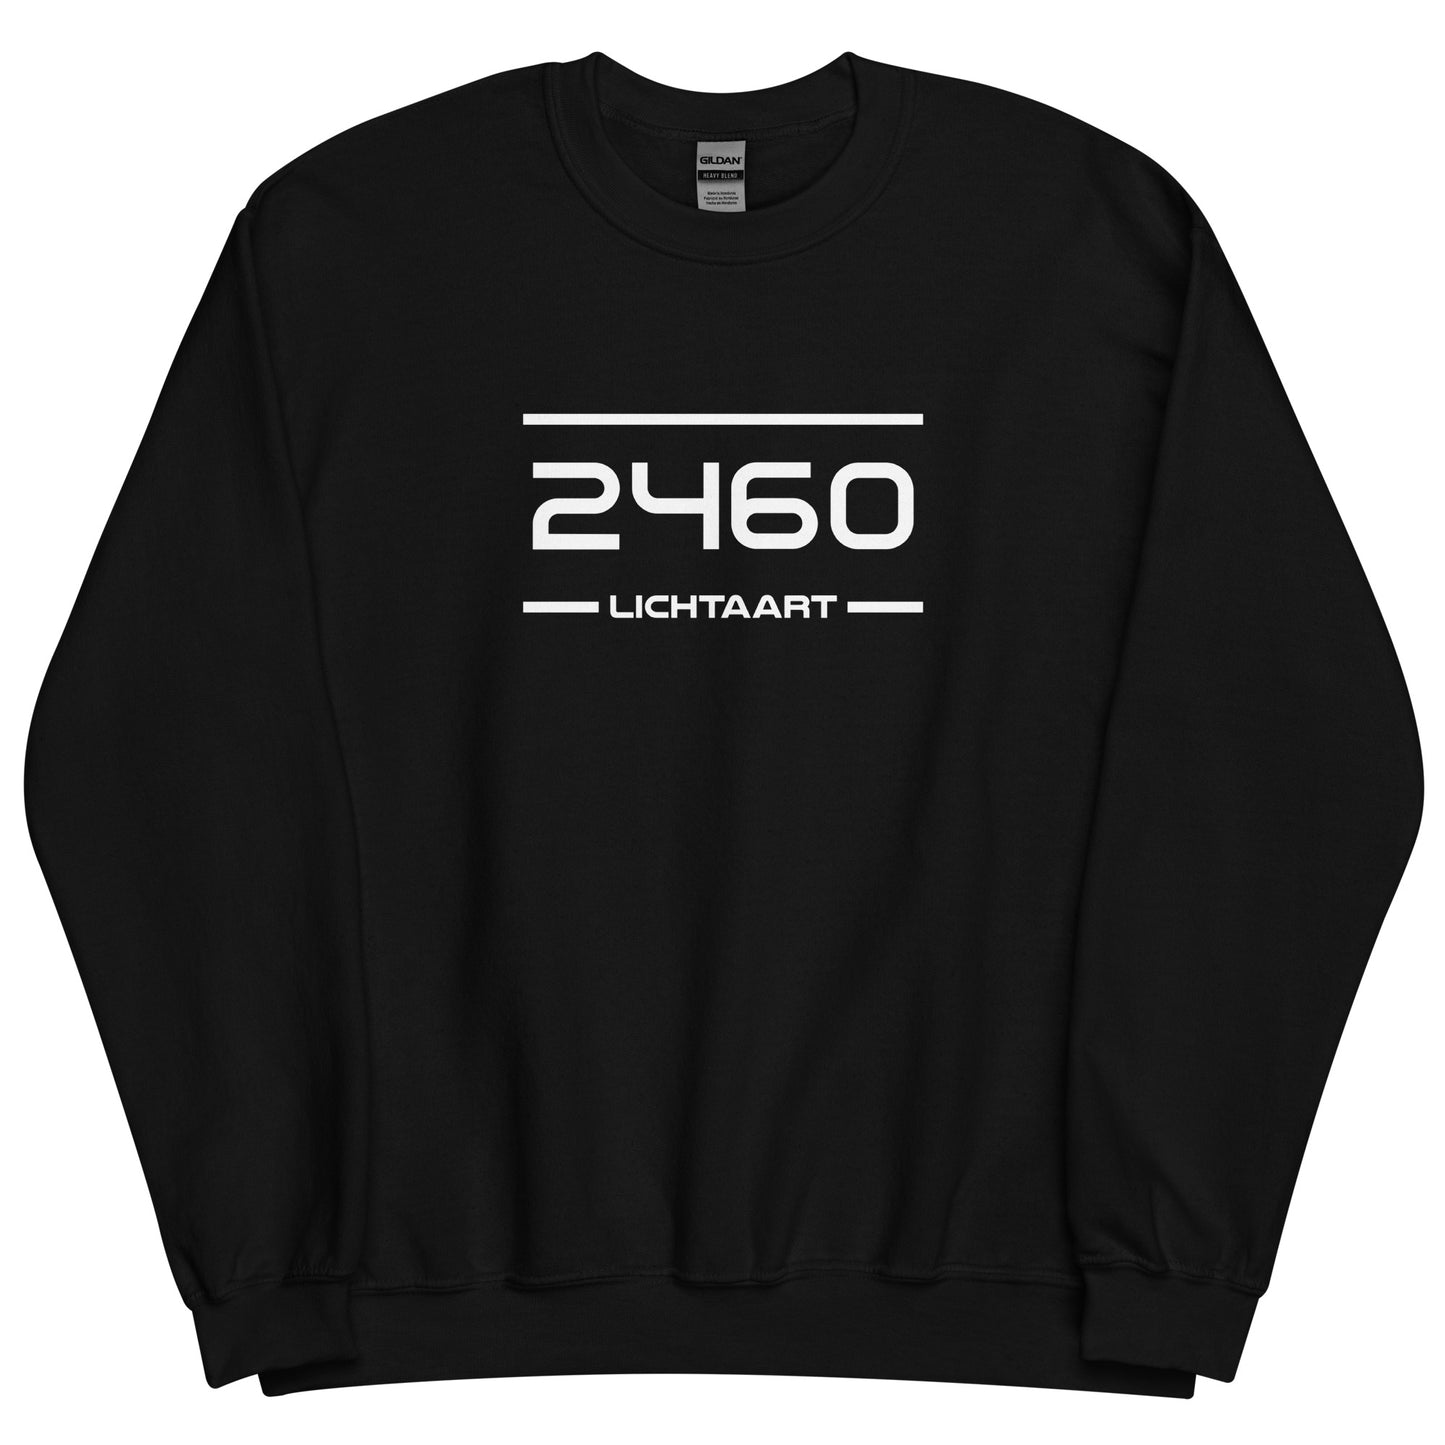 Sweater - 2460 - Lichtaart (M/V)